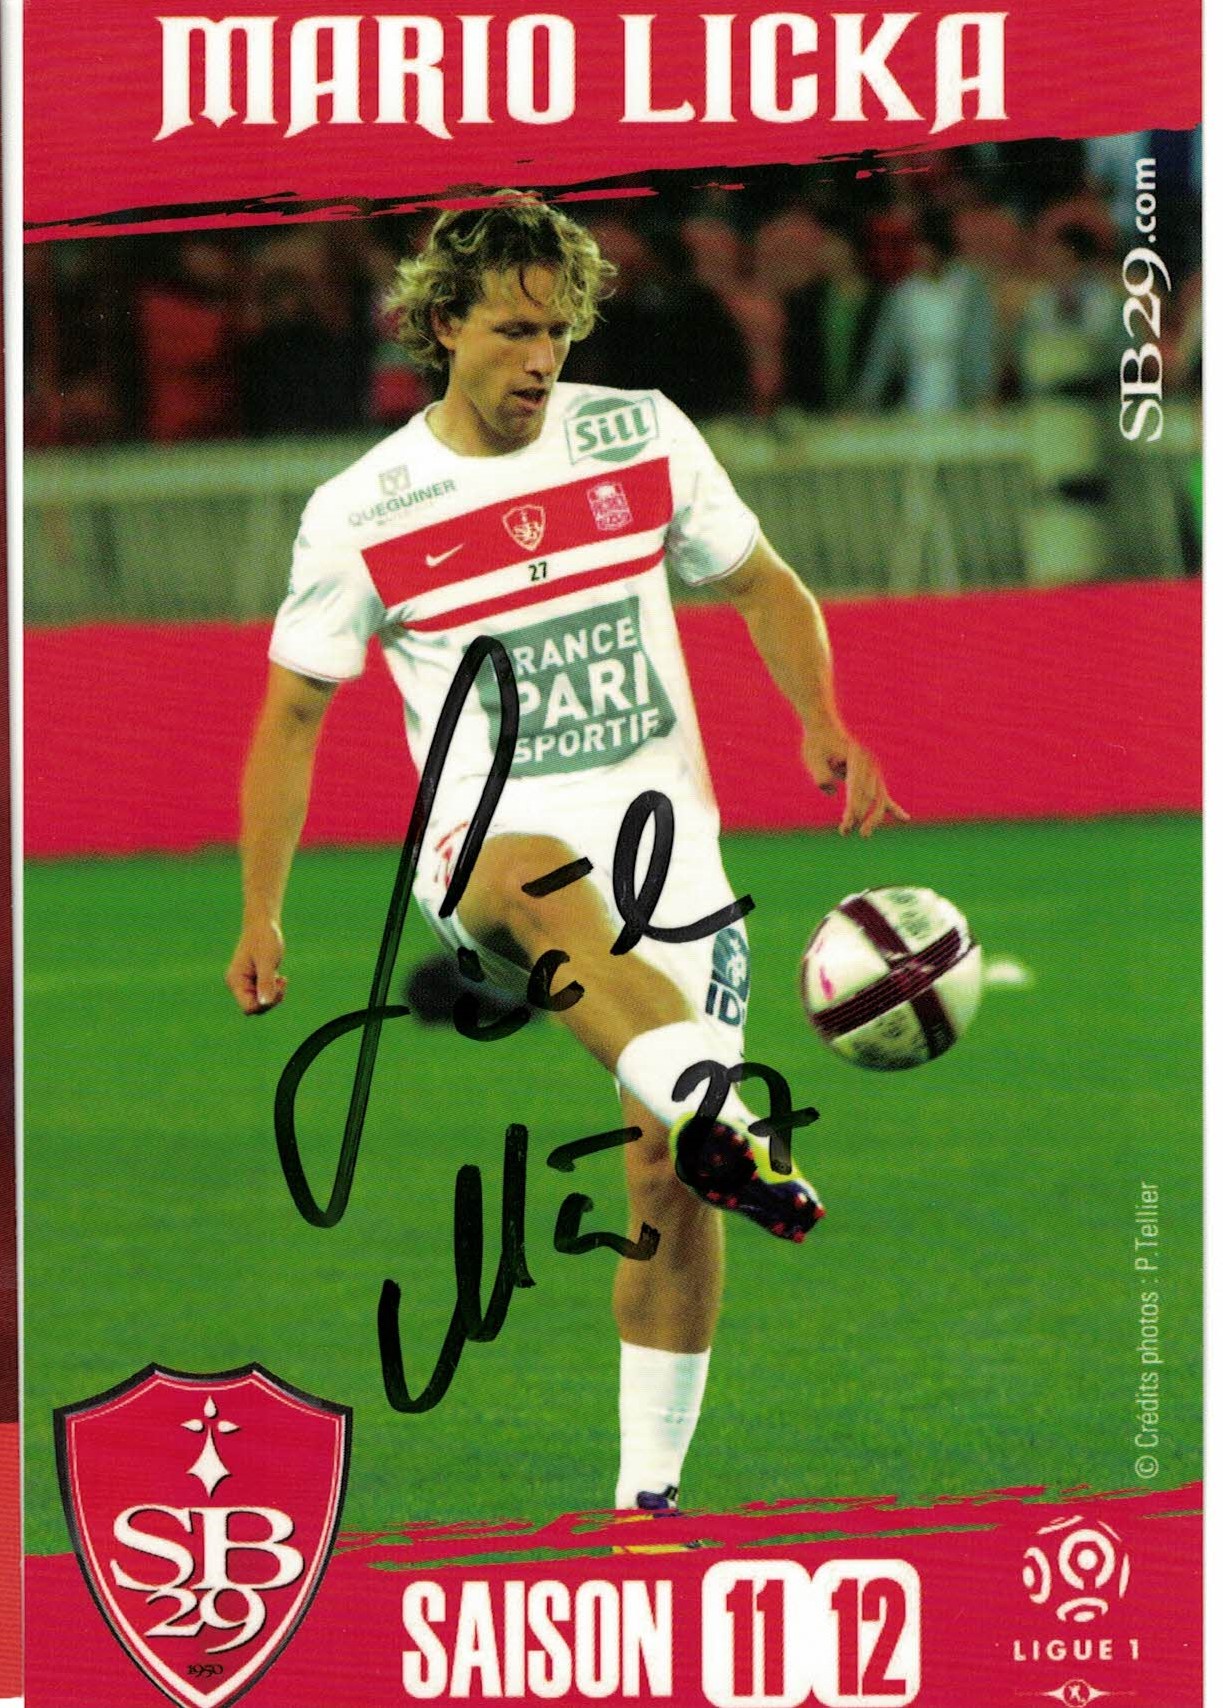 Mario Licka Stade Brestois 29 2011/12 Podpisova karta autogram